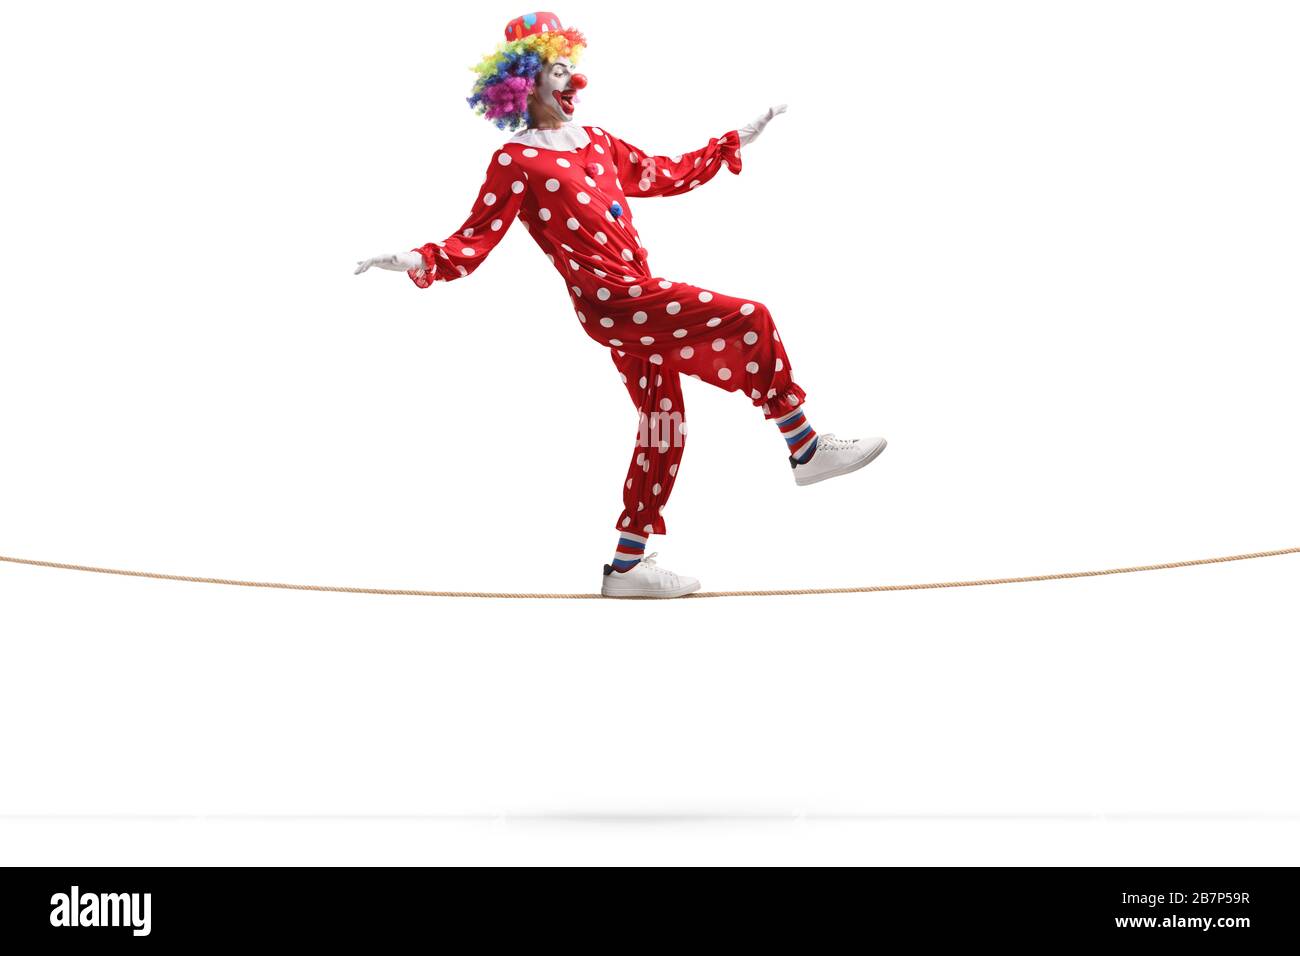 Scatto di profilo a tutta lunghezza di un clown che cammina su una corda isolata su sfondo bianco Foto Stock